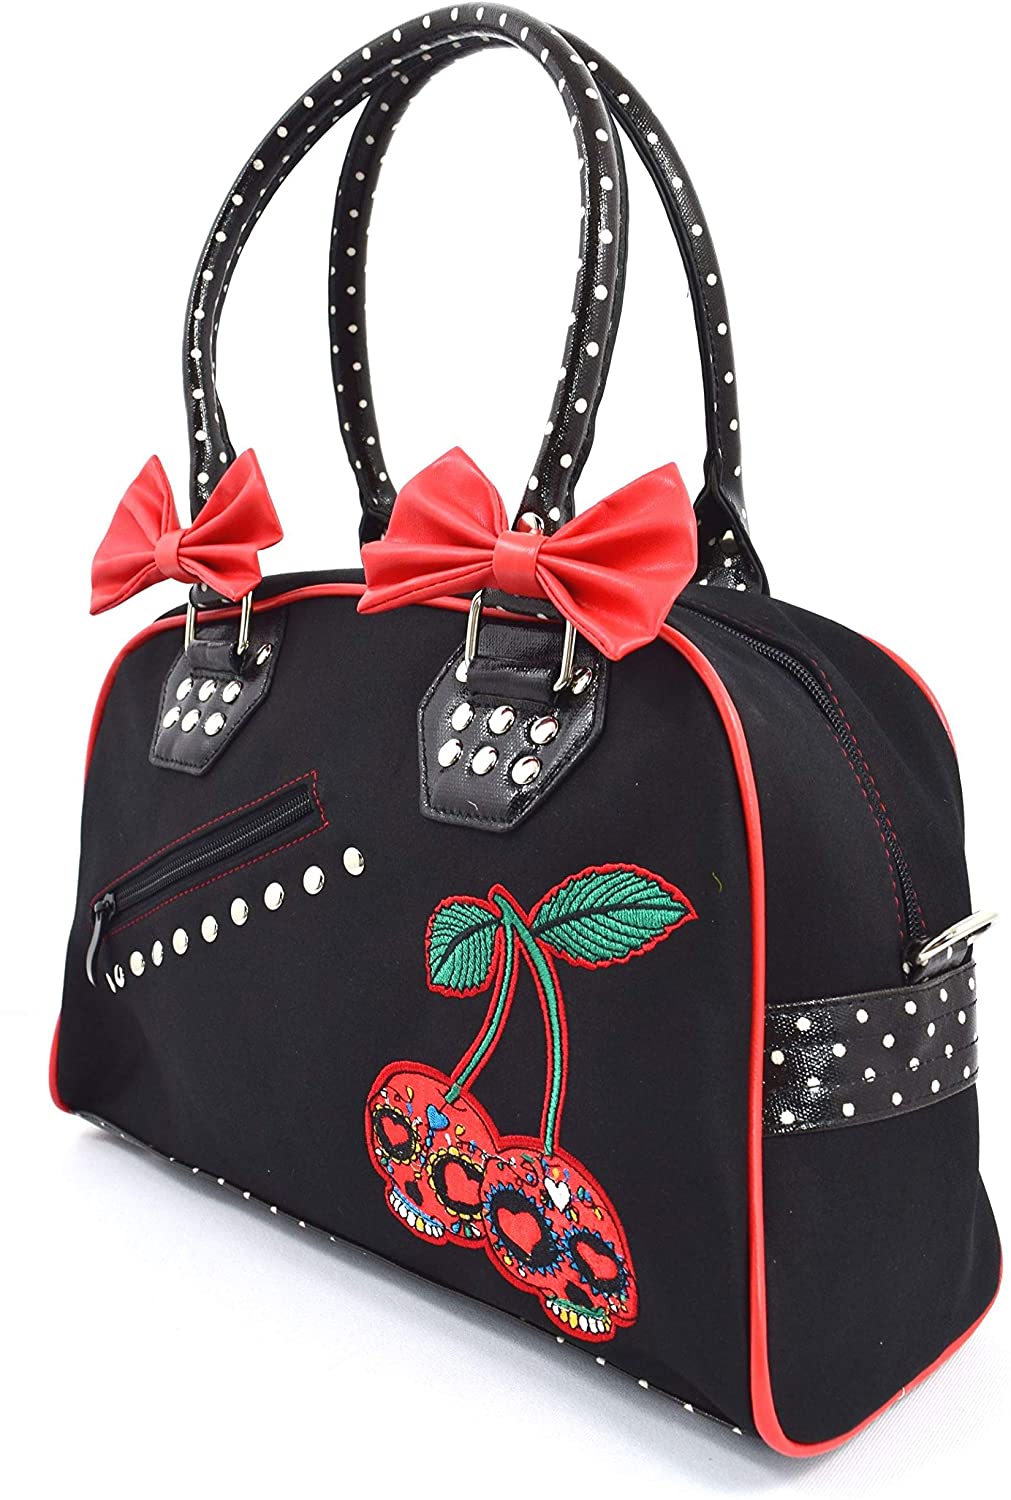 Lost Queen Cherry Bomb Skull Cherries Polka Dot Bow Handbag Rockabilly Black Red